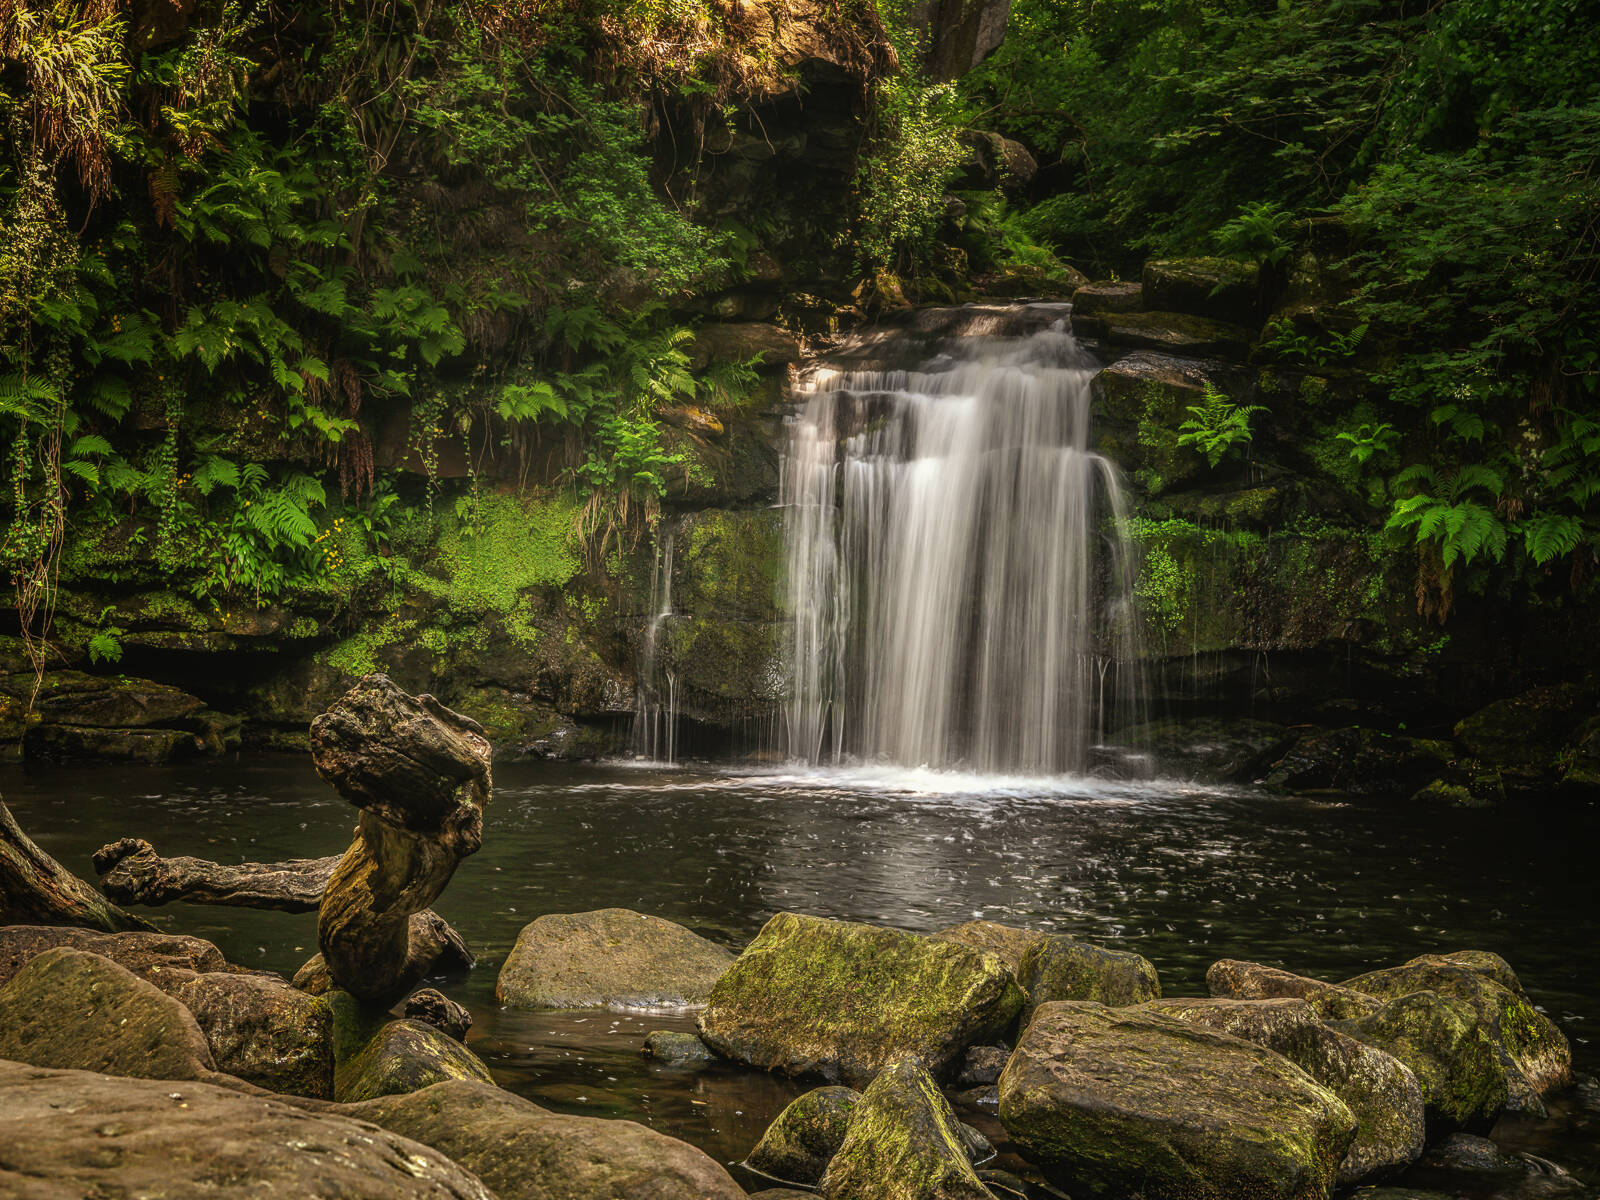 Image of Thomason Foss Waterfall by James Billings.